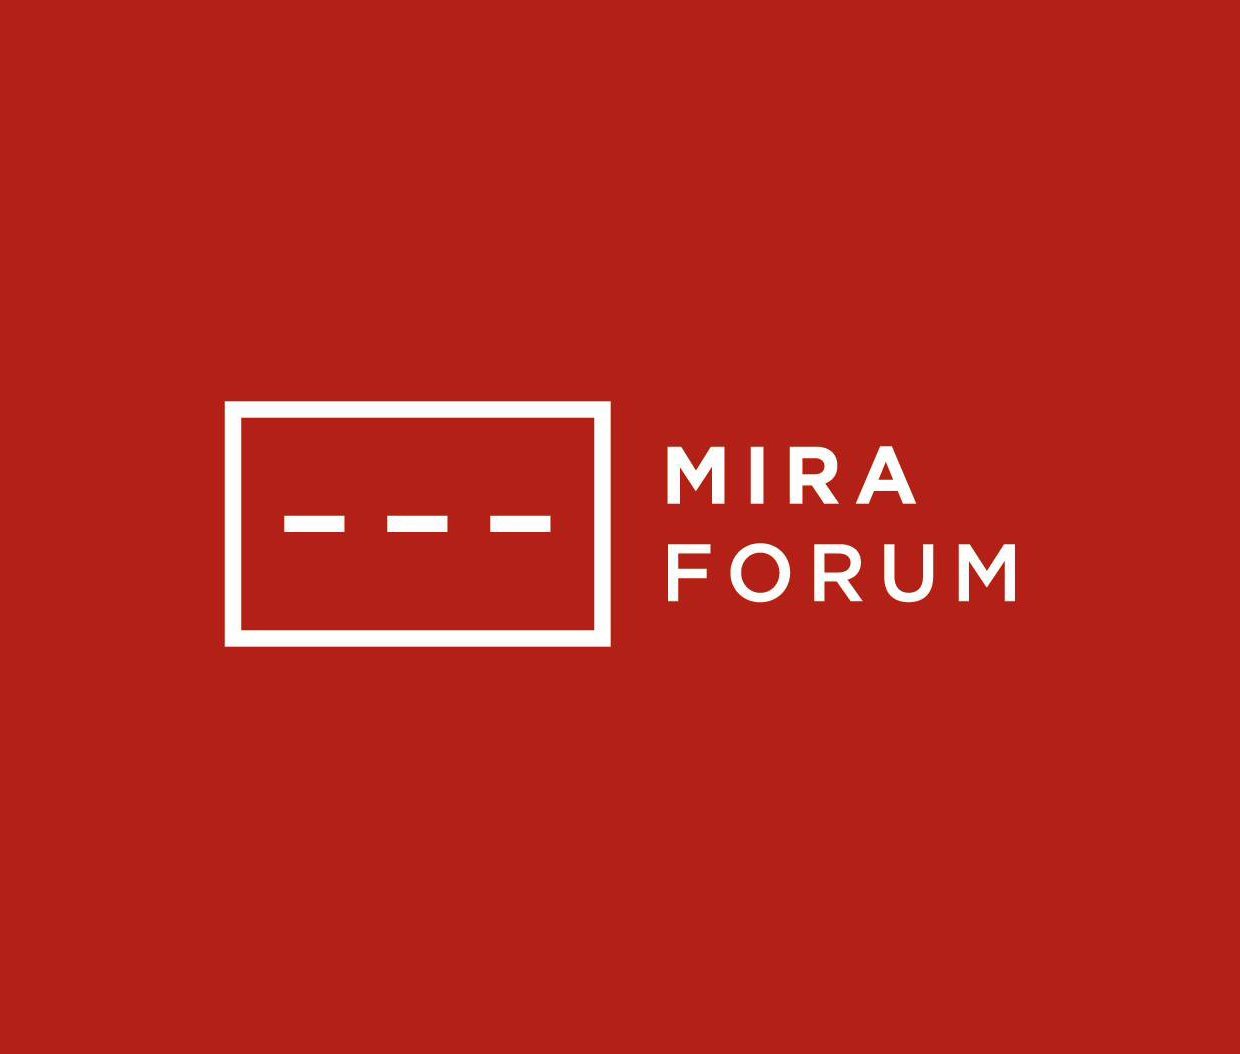 mira forum